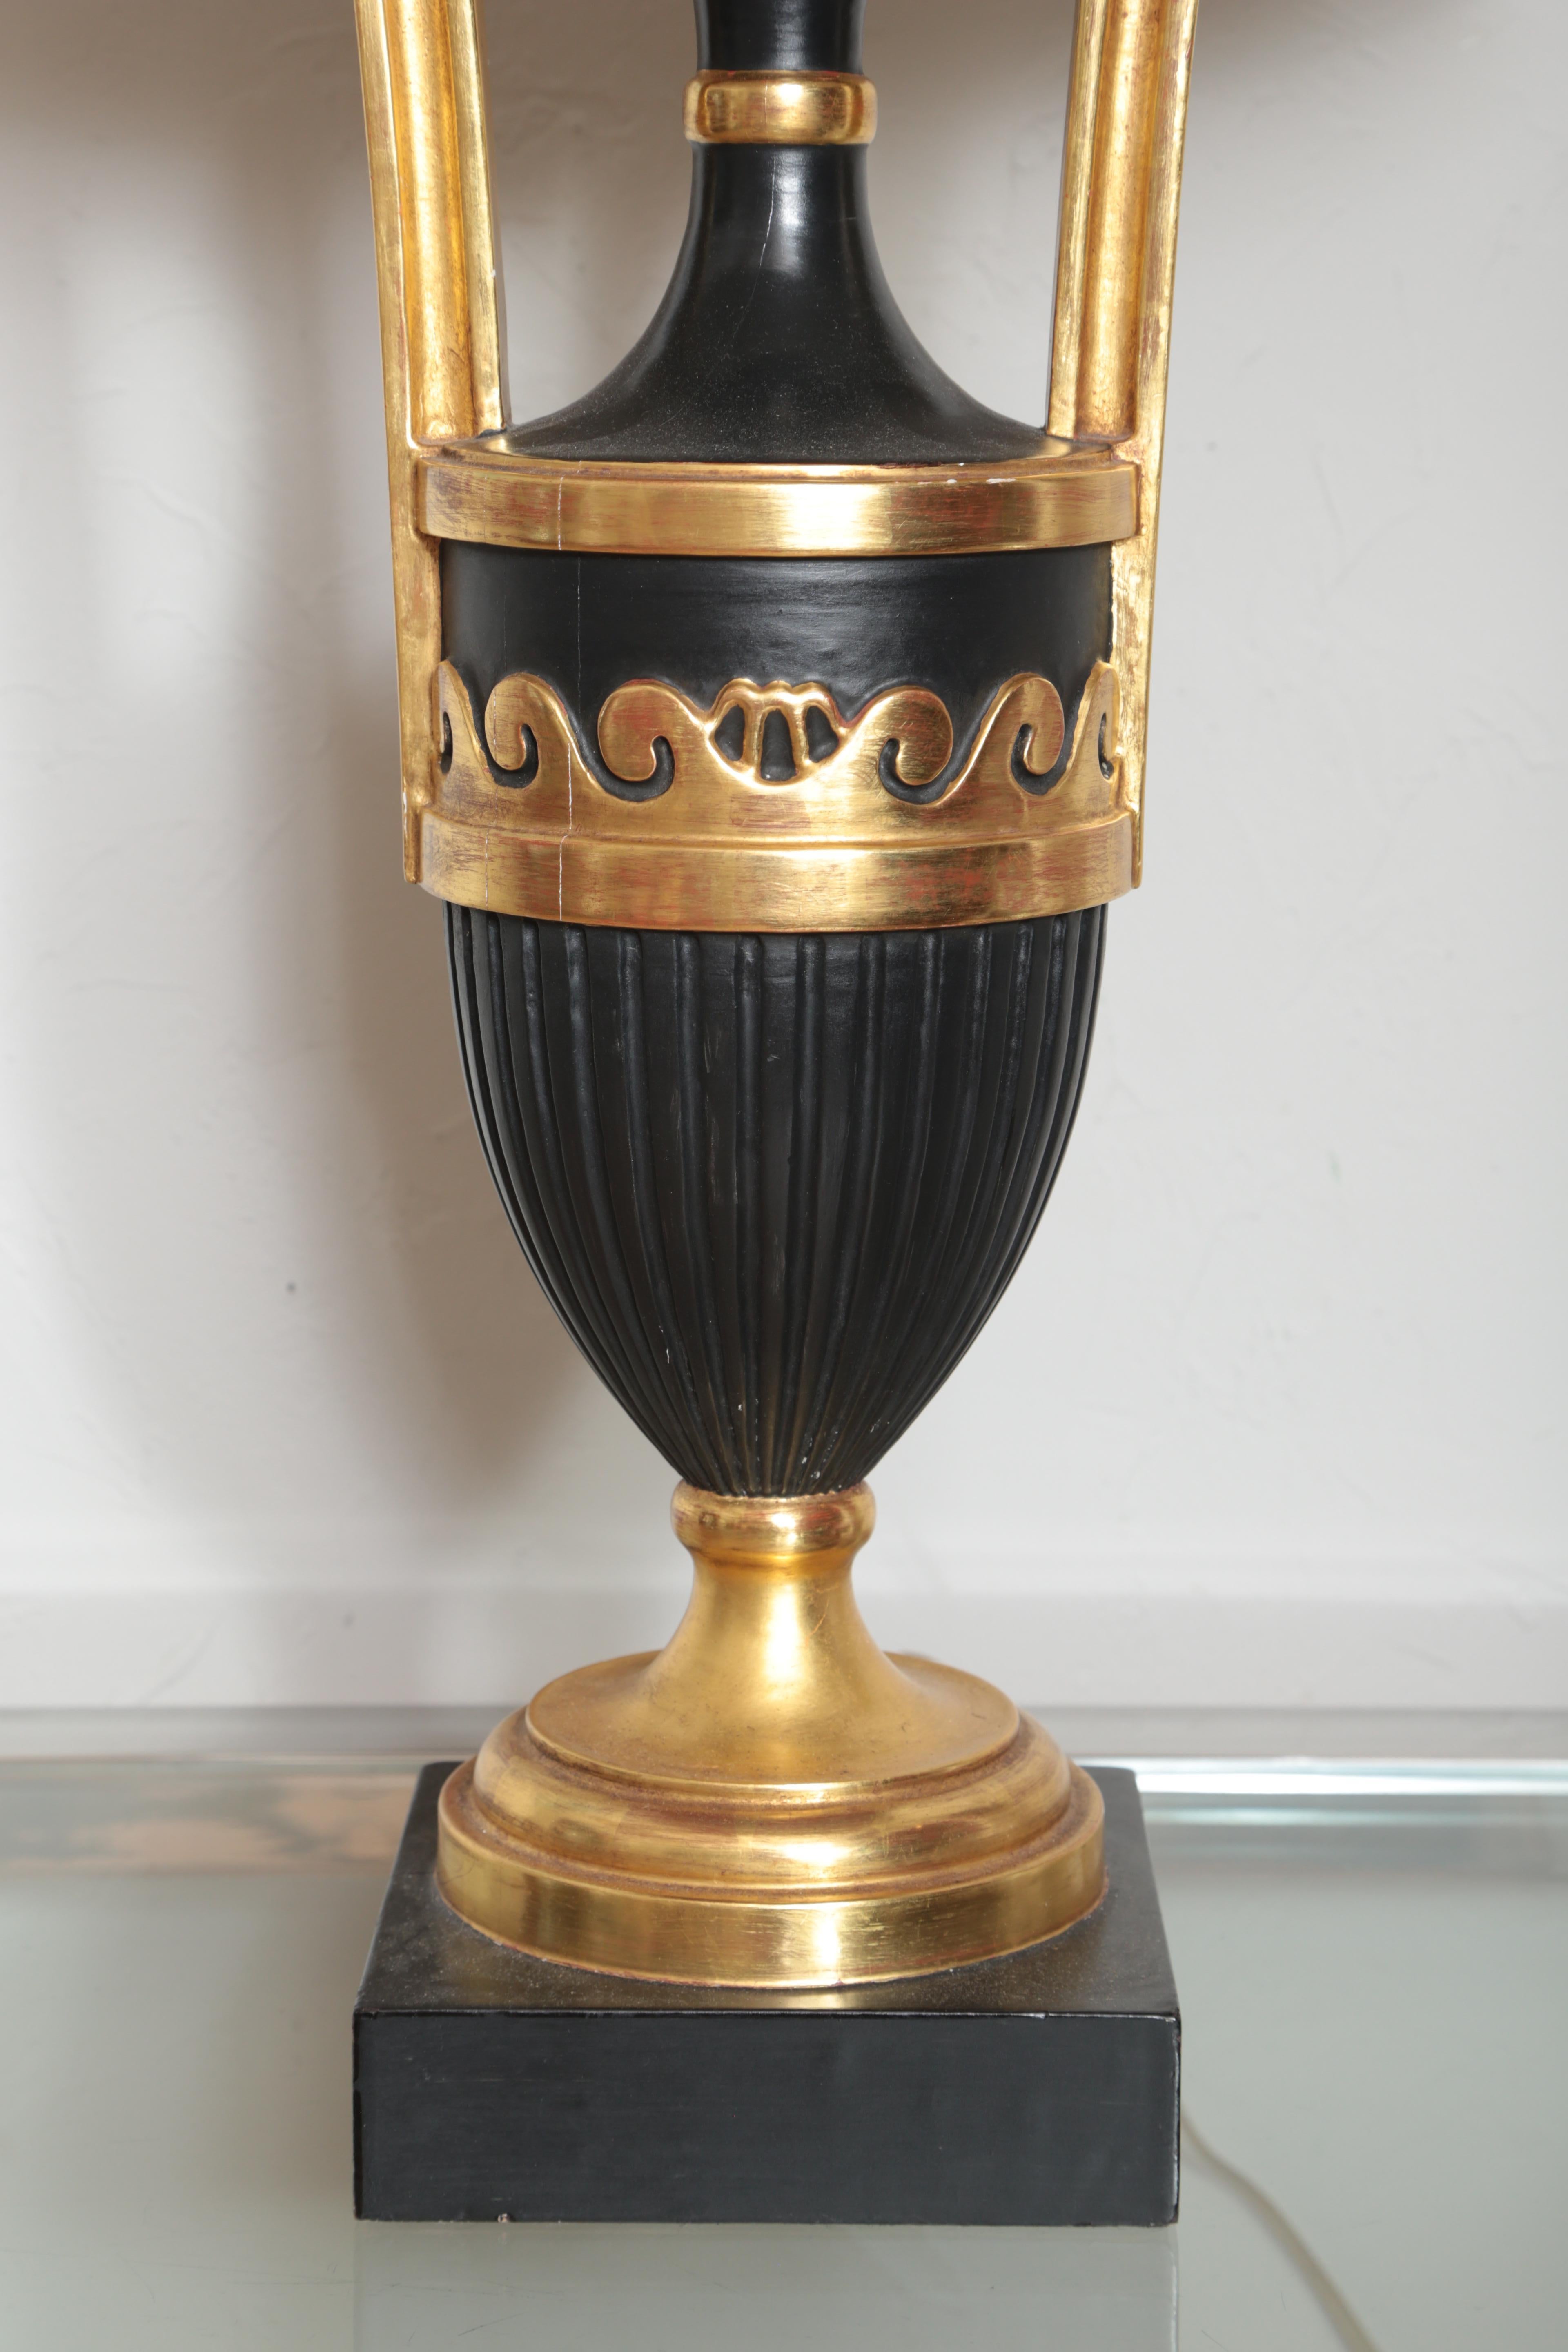 Lampe italienne en forme d'urne, sculptée, peinte et dorée, avec un nouvel abat-jour en soie.